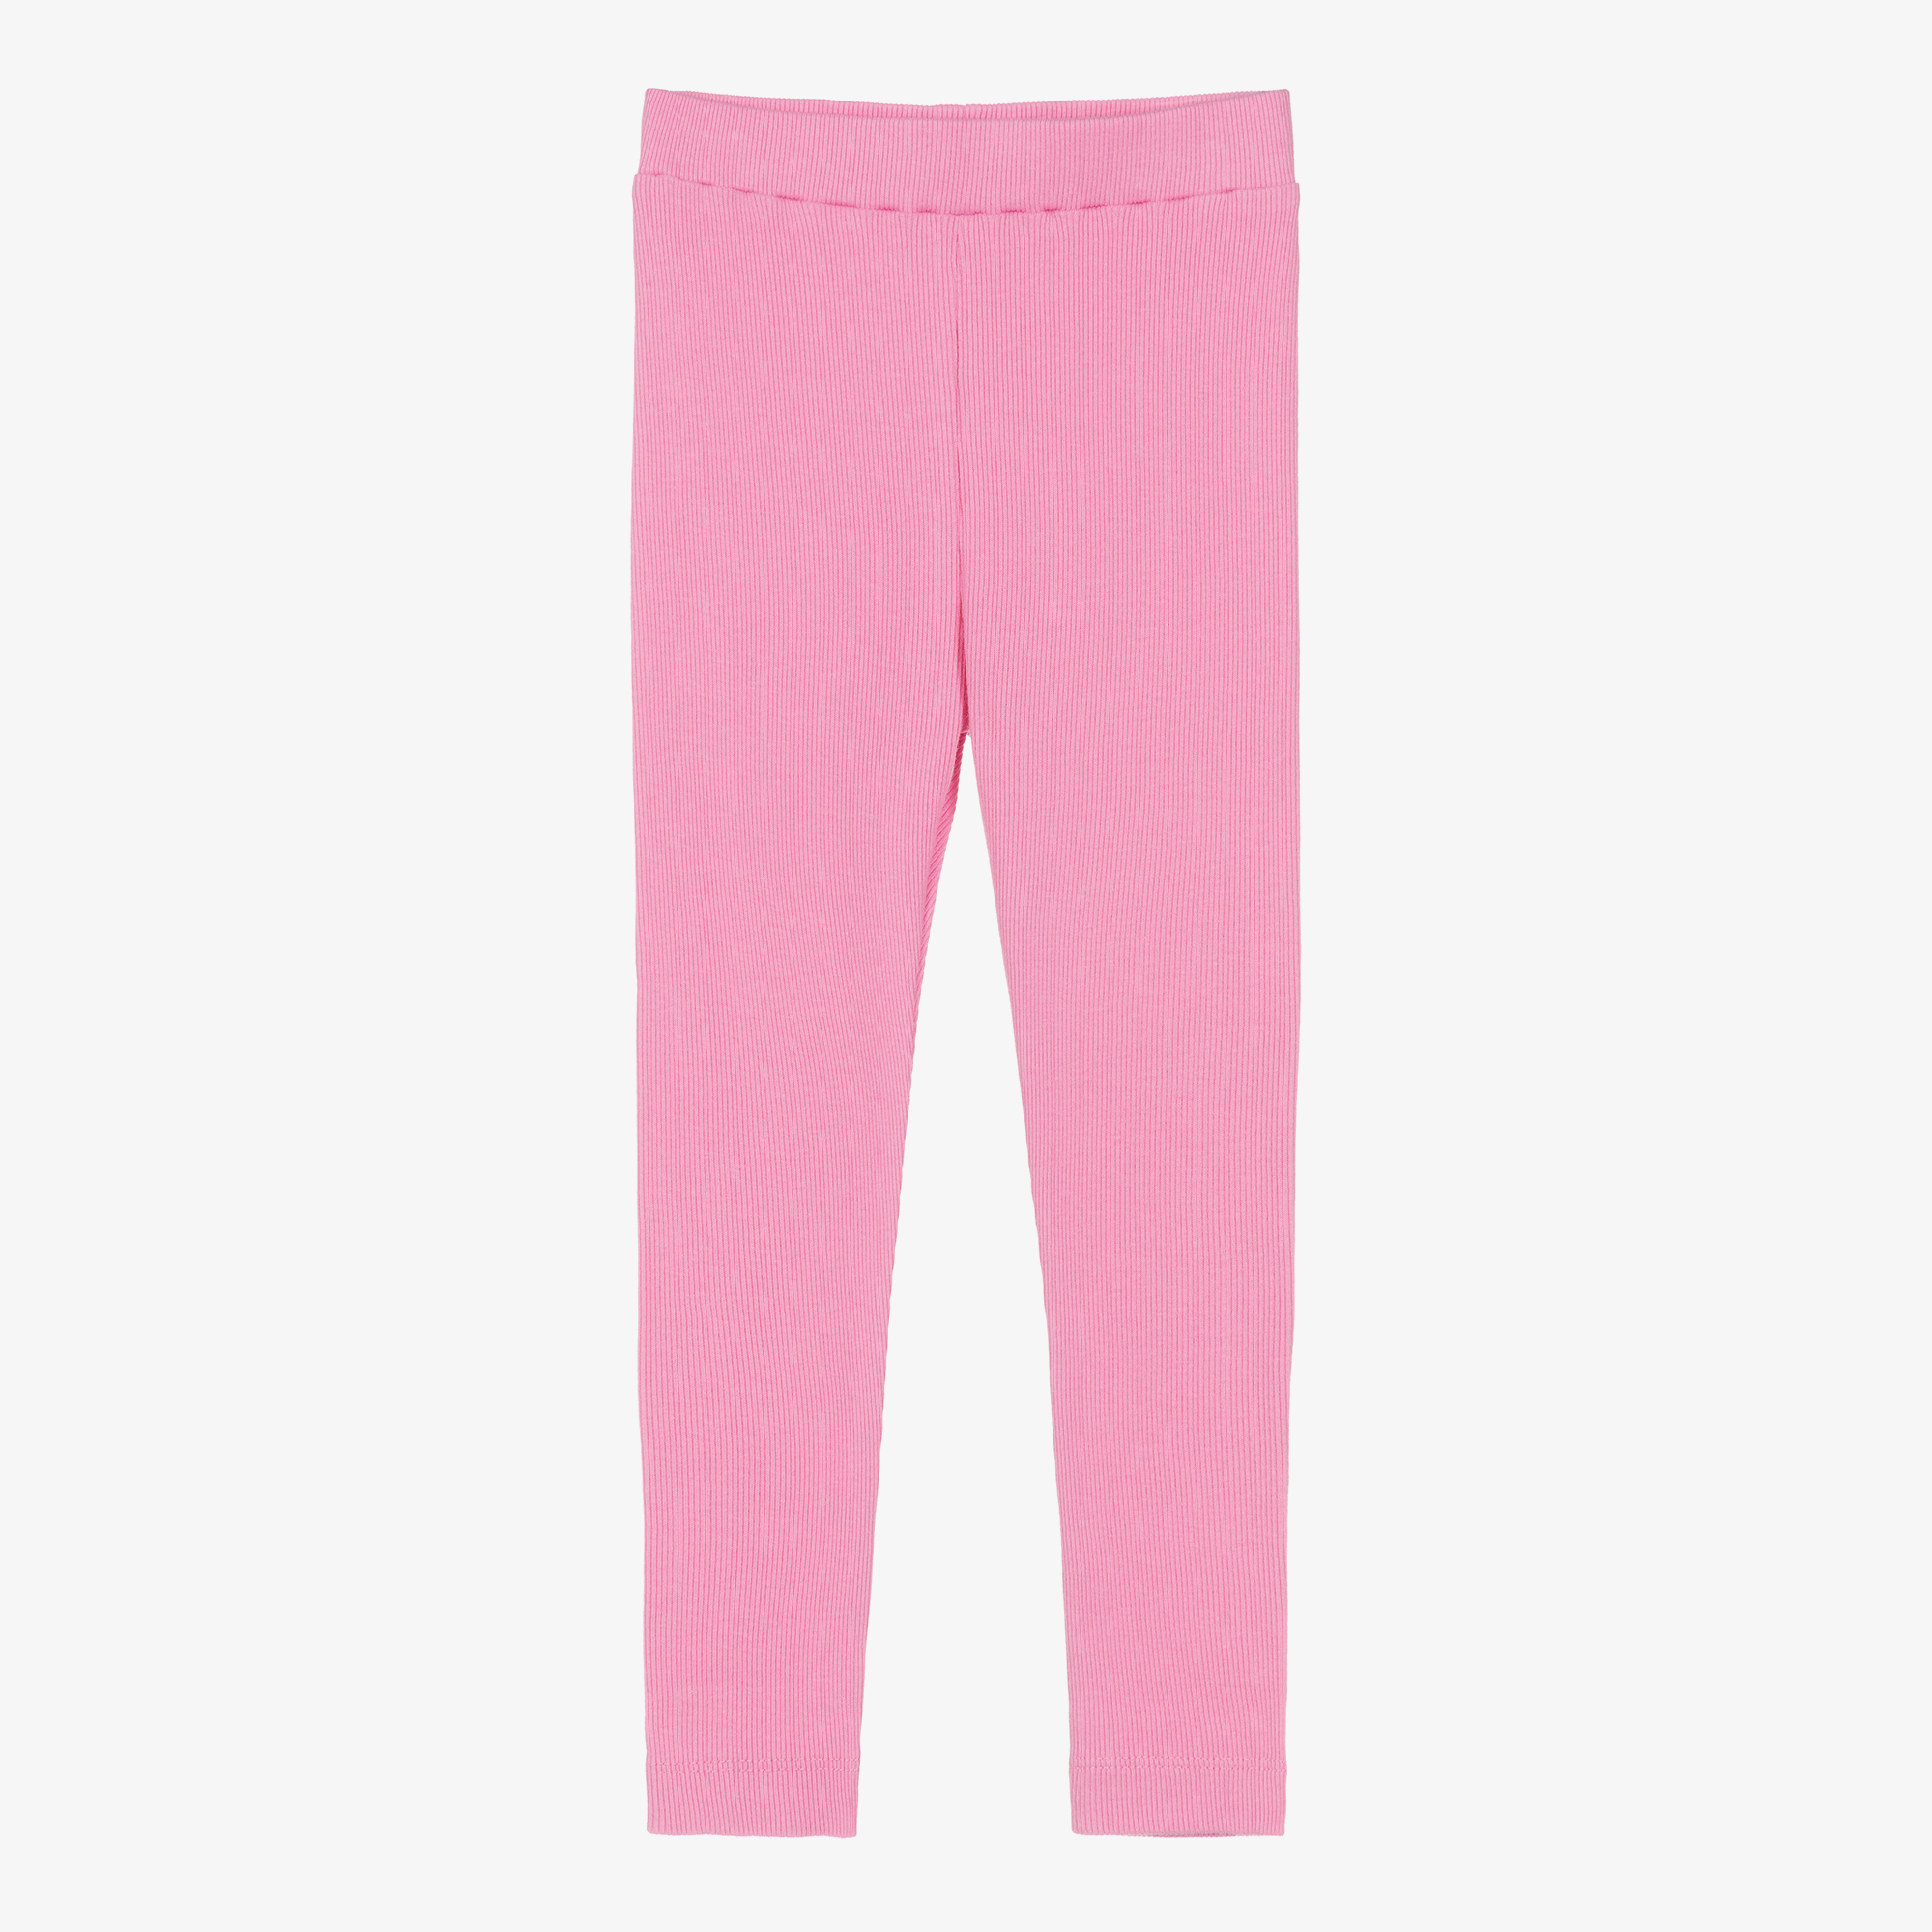 Joyday - Girls Pink Cotton Ribbed Leggings